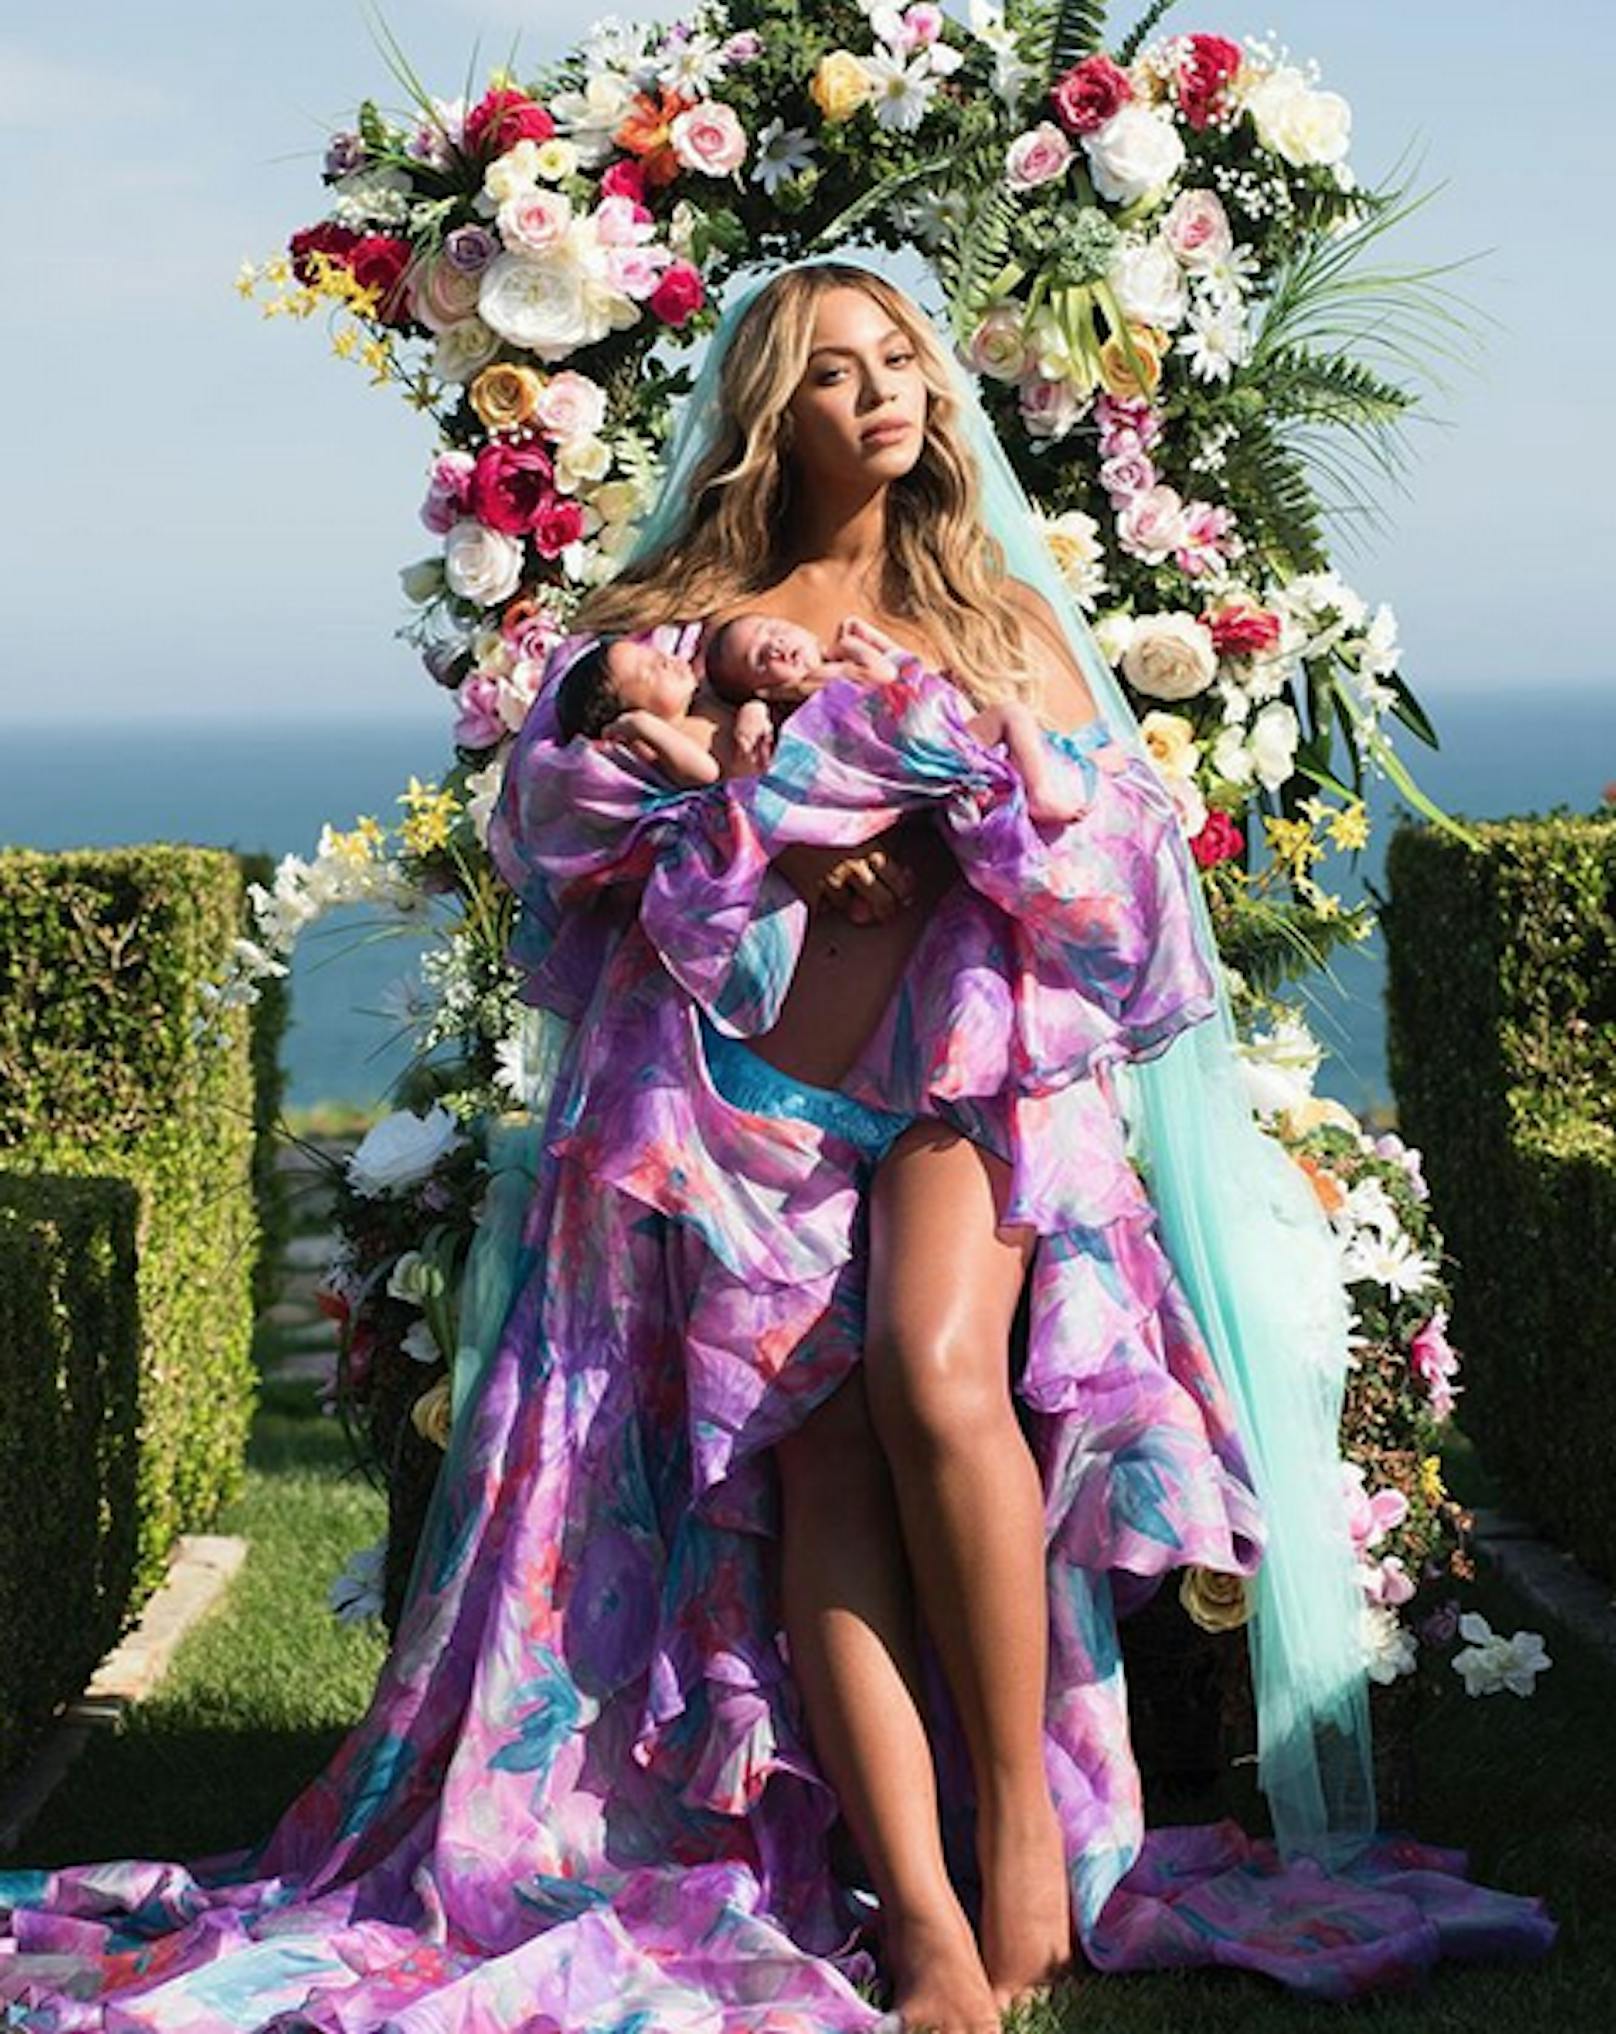 <strong>SIR</strong>, der Sohn von Diva <strong>Beyoncé</strong> kam laut seiner Mutter schon selbstbewusst auf die Welt: "Er verhält sich einfach so." Mehr Erklärung bedarf es anscheinend nicht.